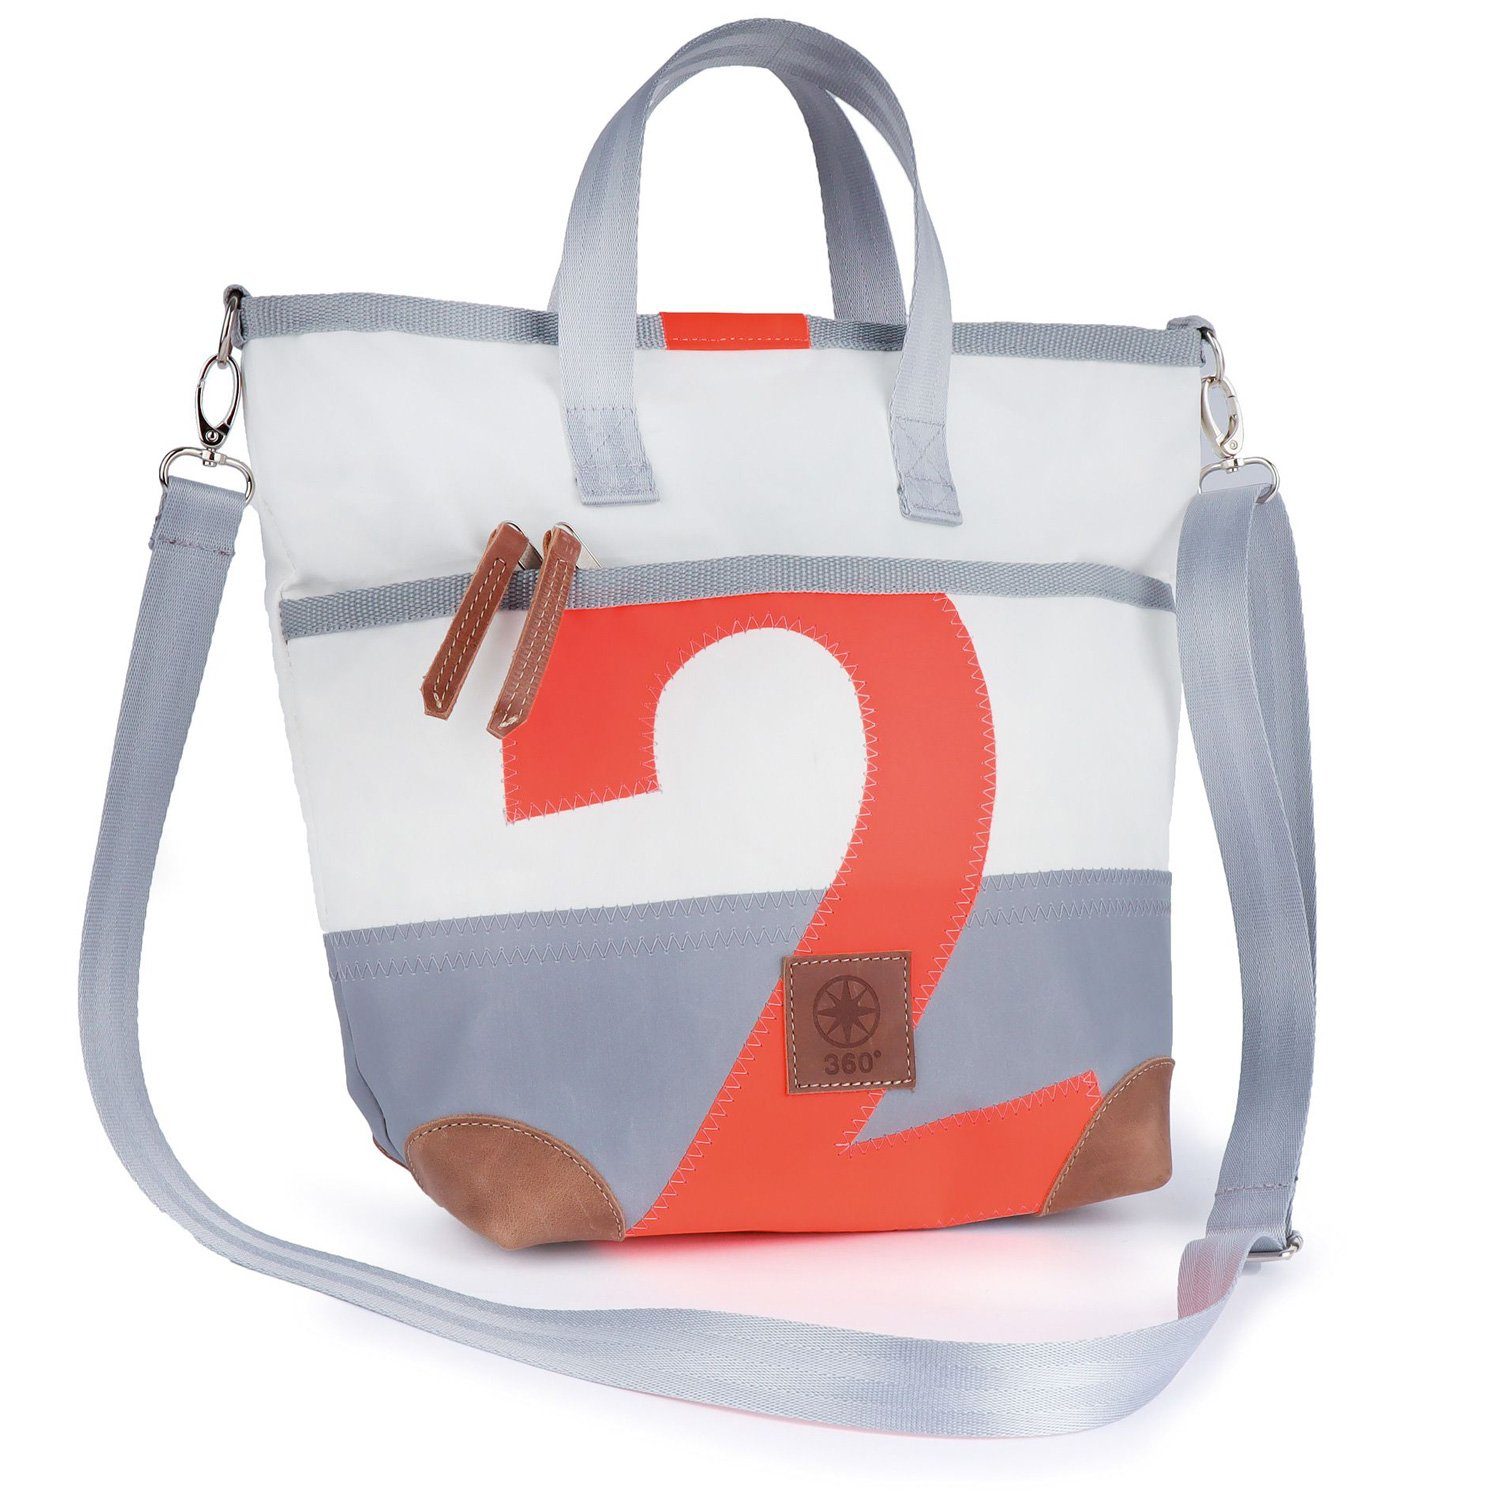 Segeltuch 360Grad weiß, Deern Weiß/Grau orange Handtasche mit Handtasche Zahl Mini Zahl Damen oranger